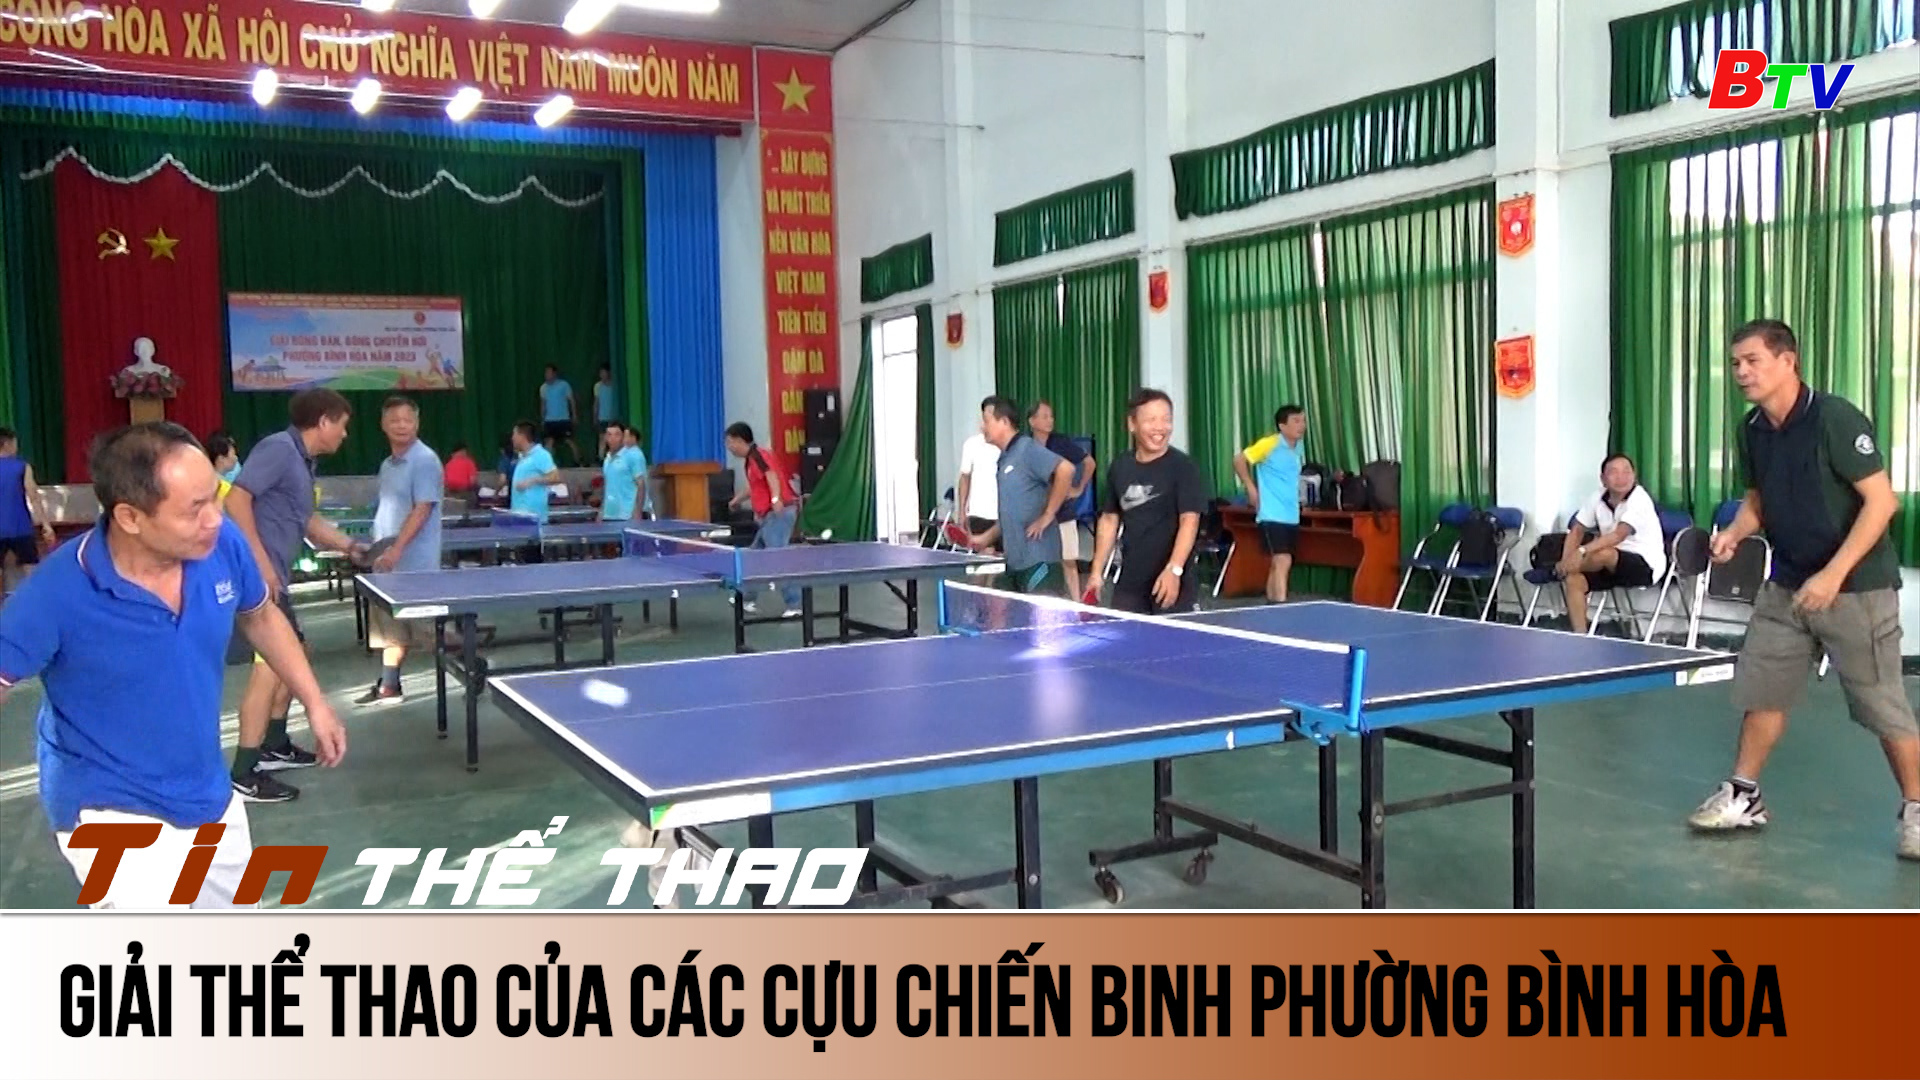 Giải thể thao của các Cựu chiến binh phường Bình Hòa, Thuận An, Bình Dương | Tin Thể thao 24h